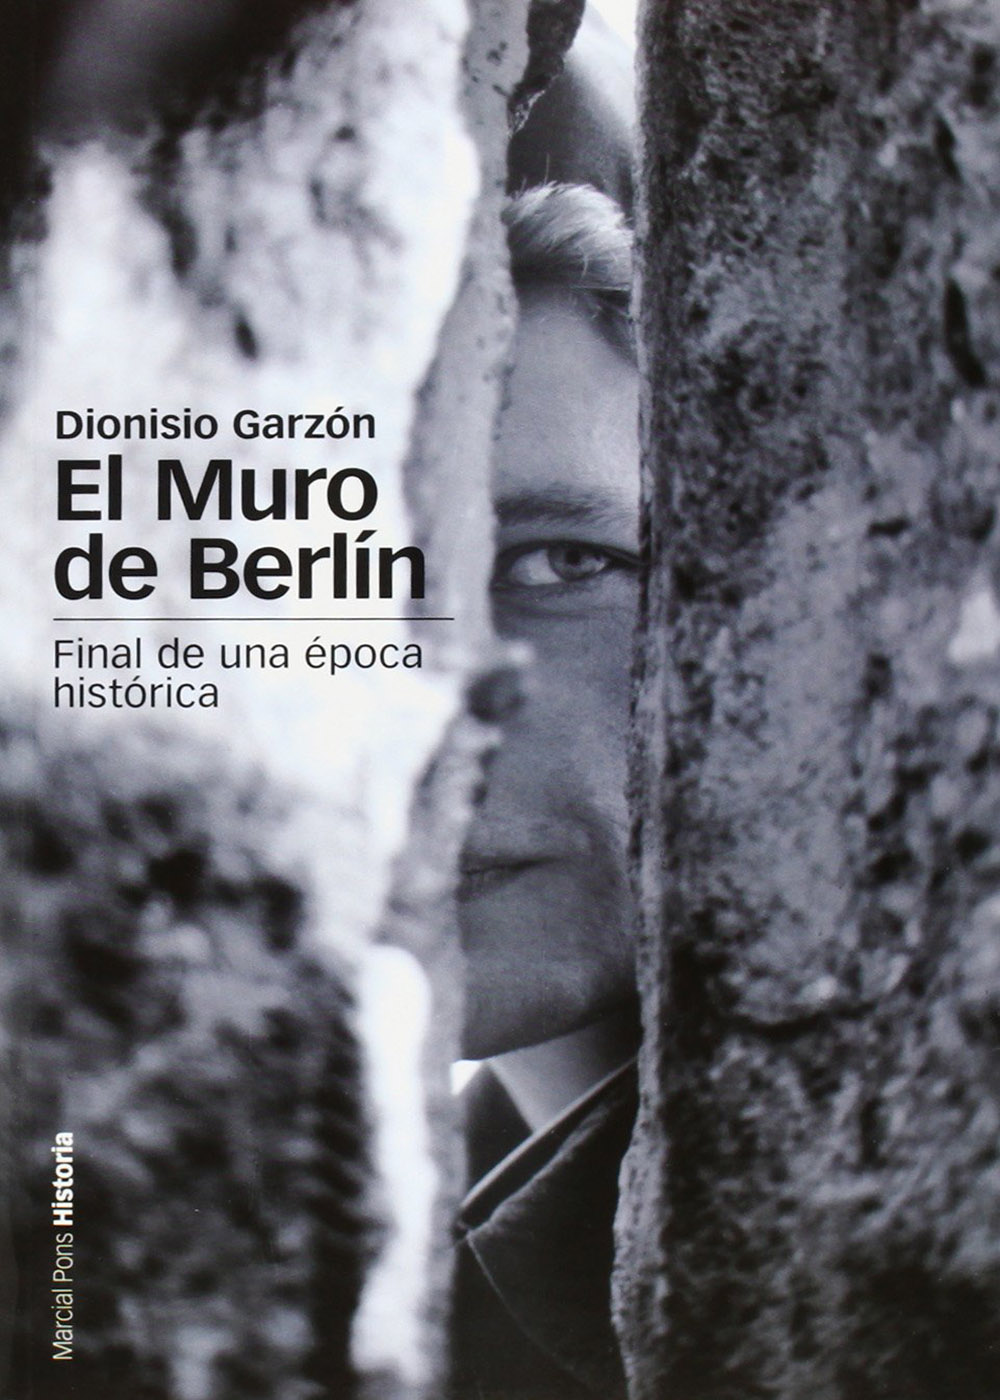 Dionisio Garzón - El muro de Berlín